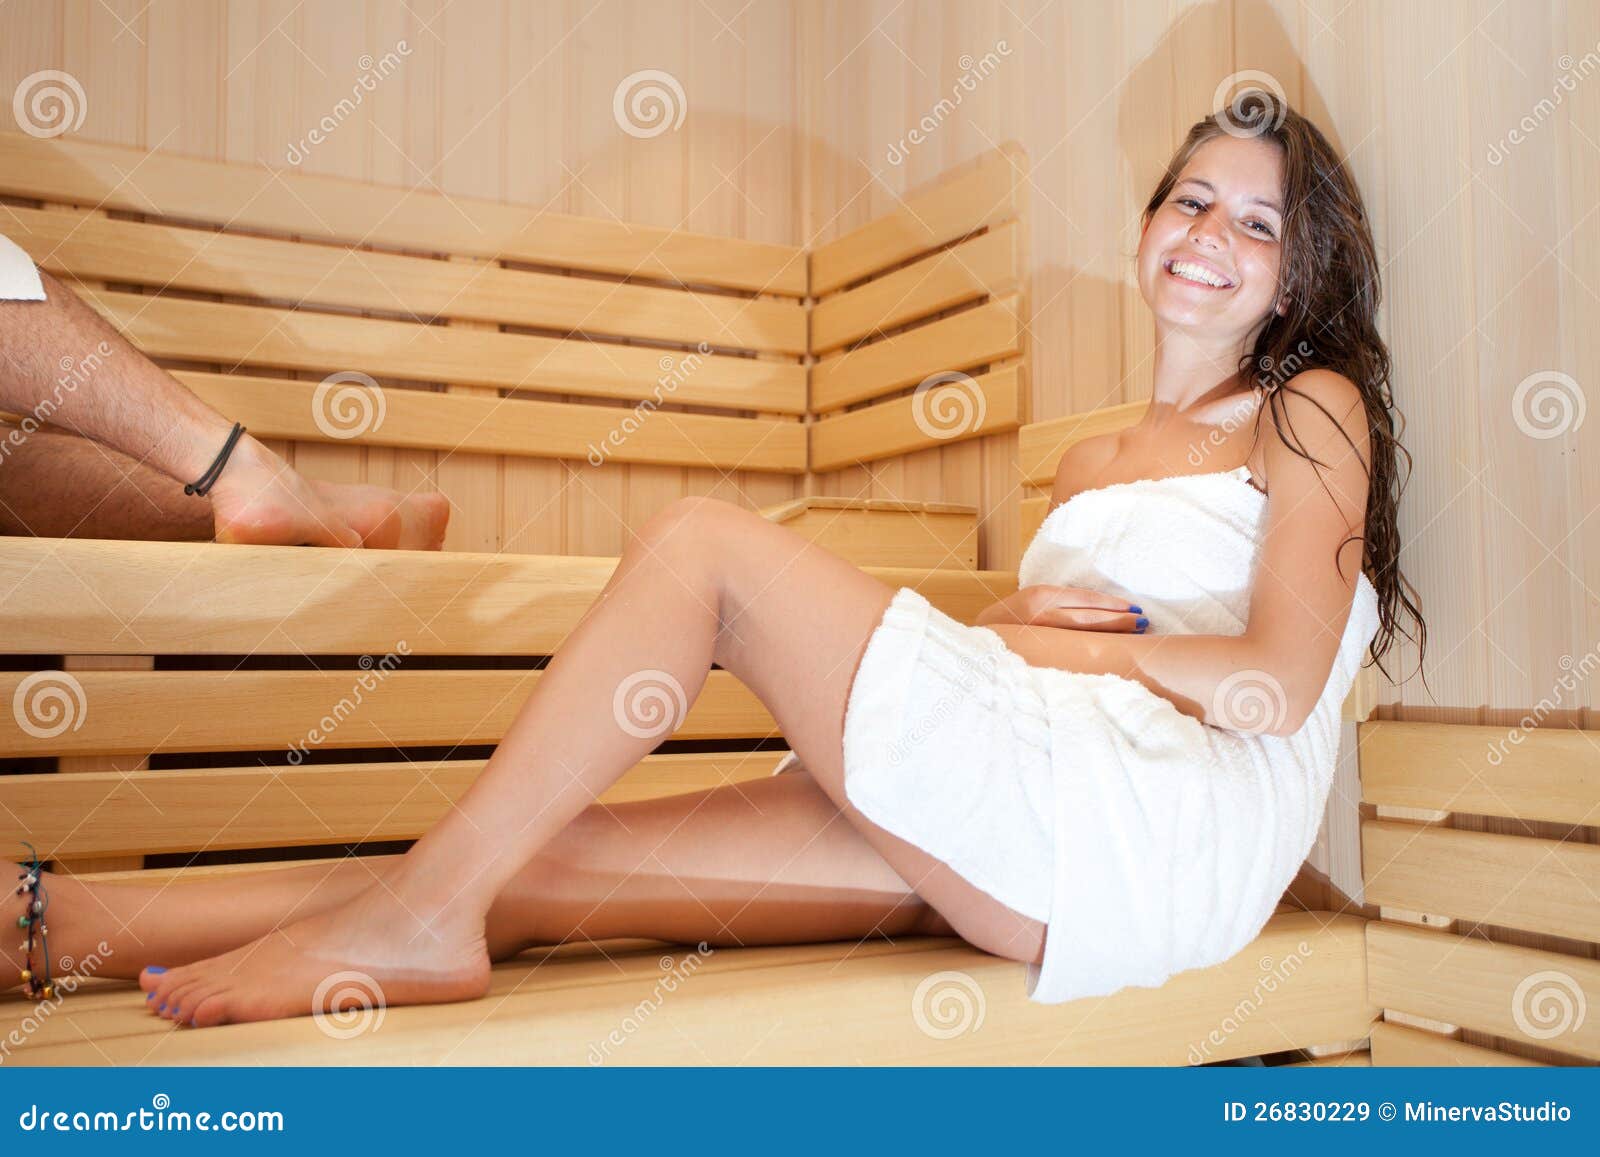 Kobieta w sauna. Młoda kobieta target311_0_ w sauna